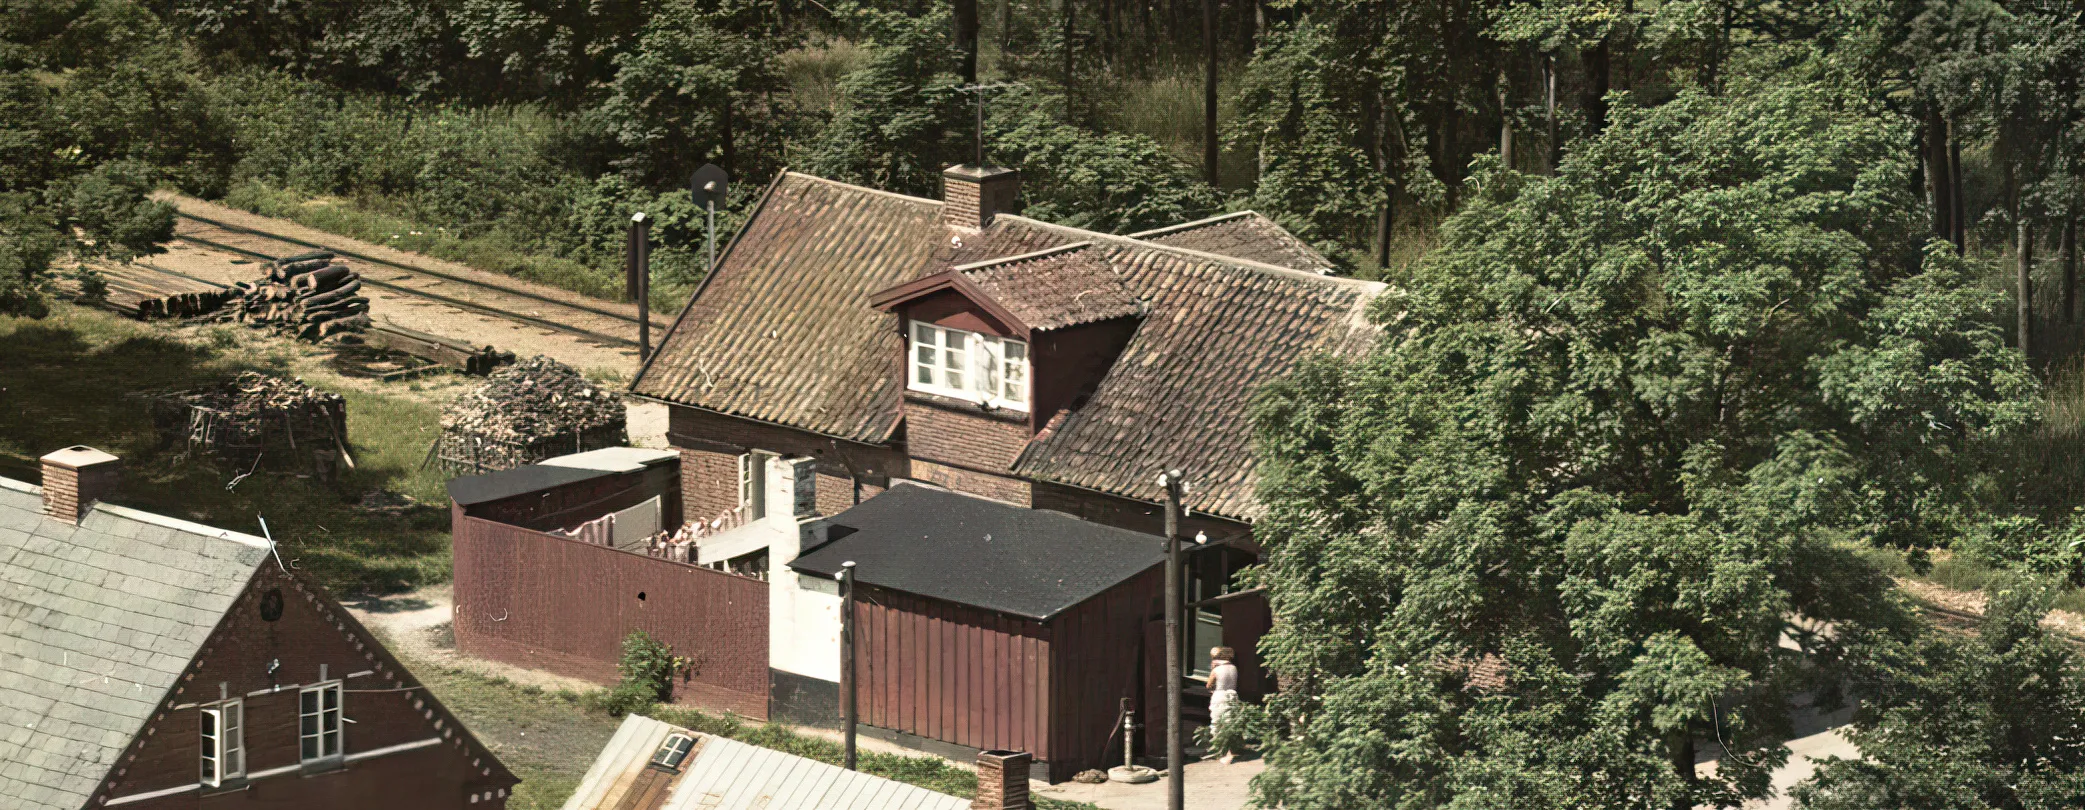 Billede af Store-Rørbæk Station.